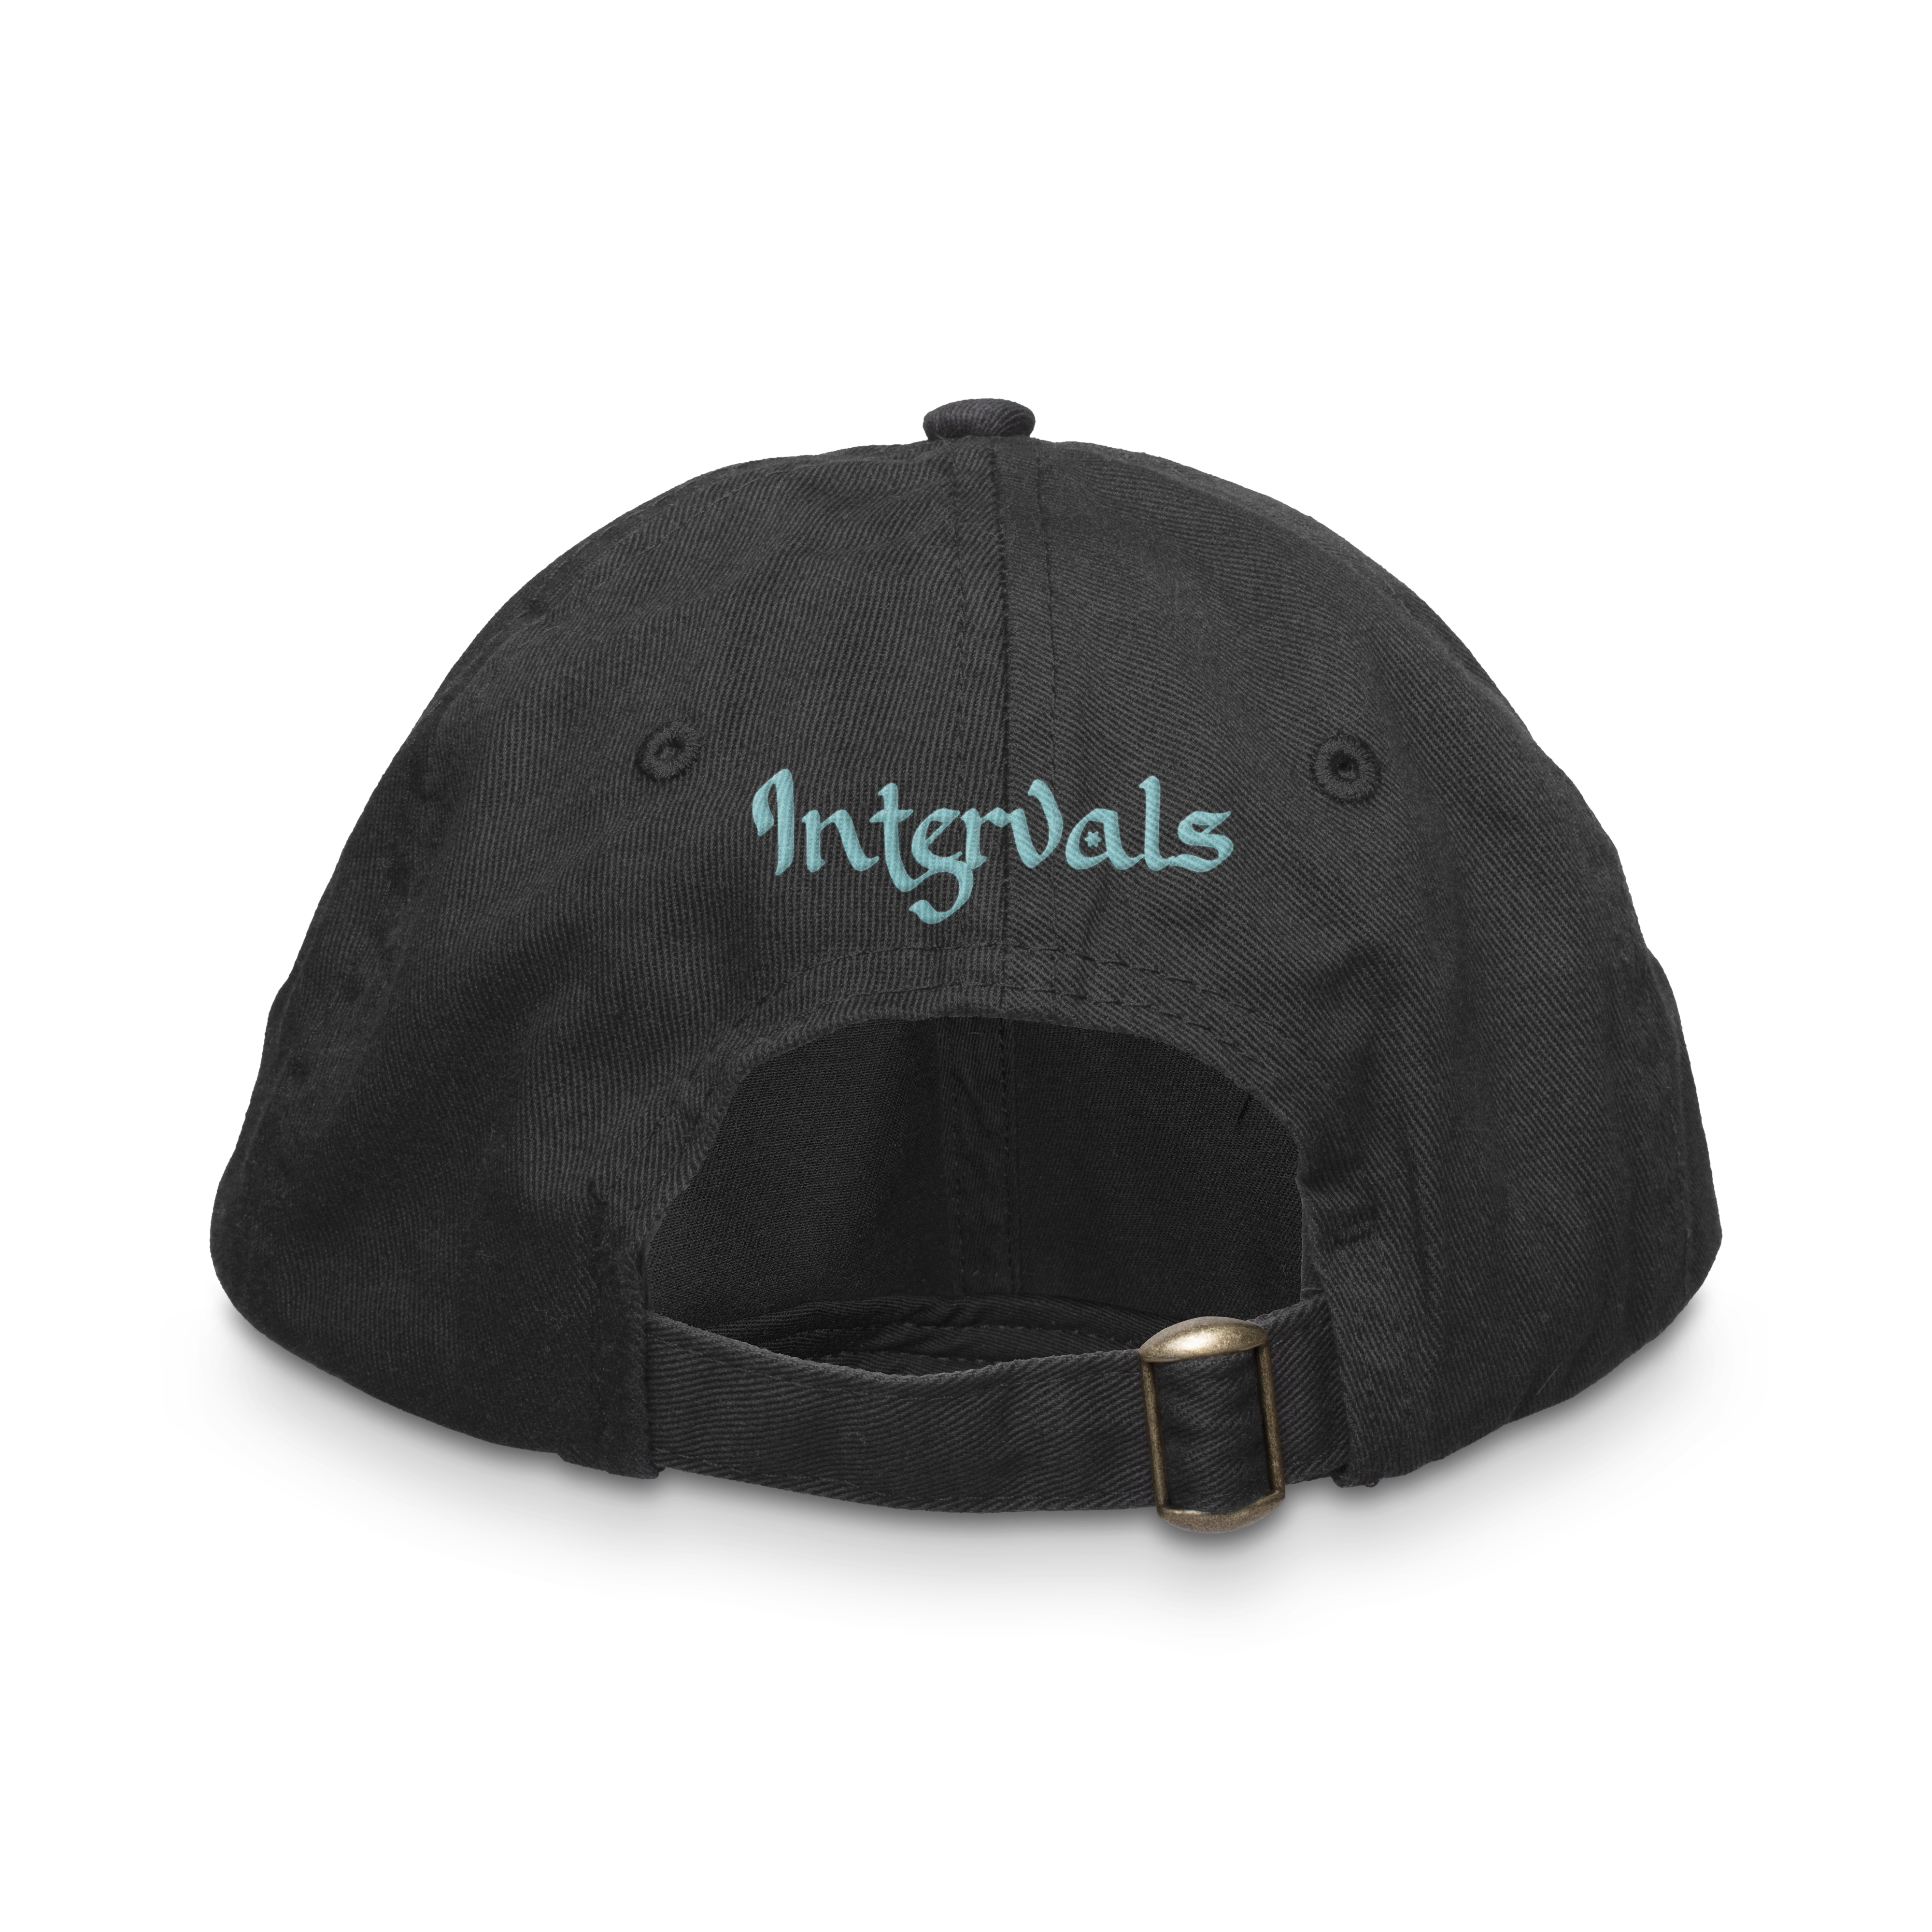 Intervals - Emblem Hat